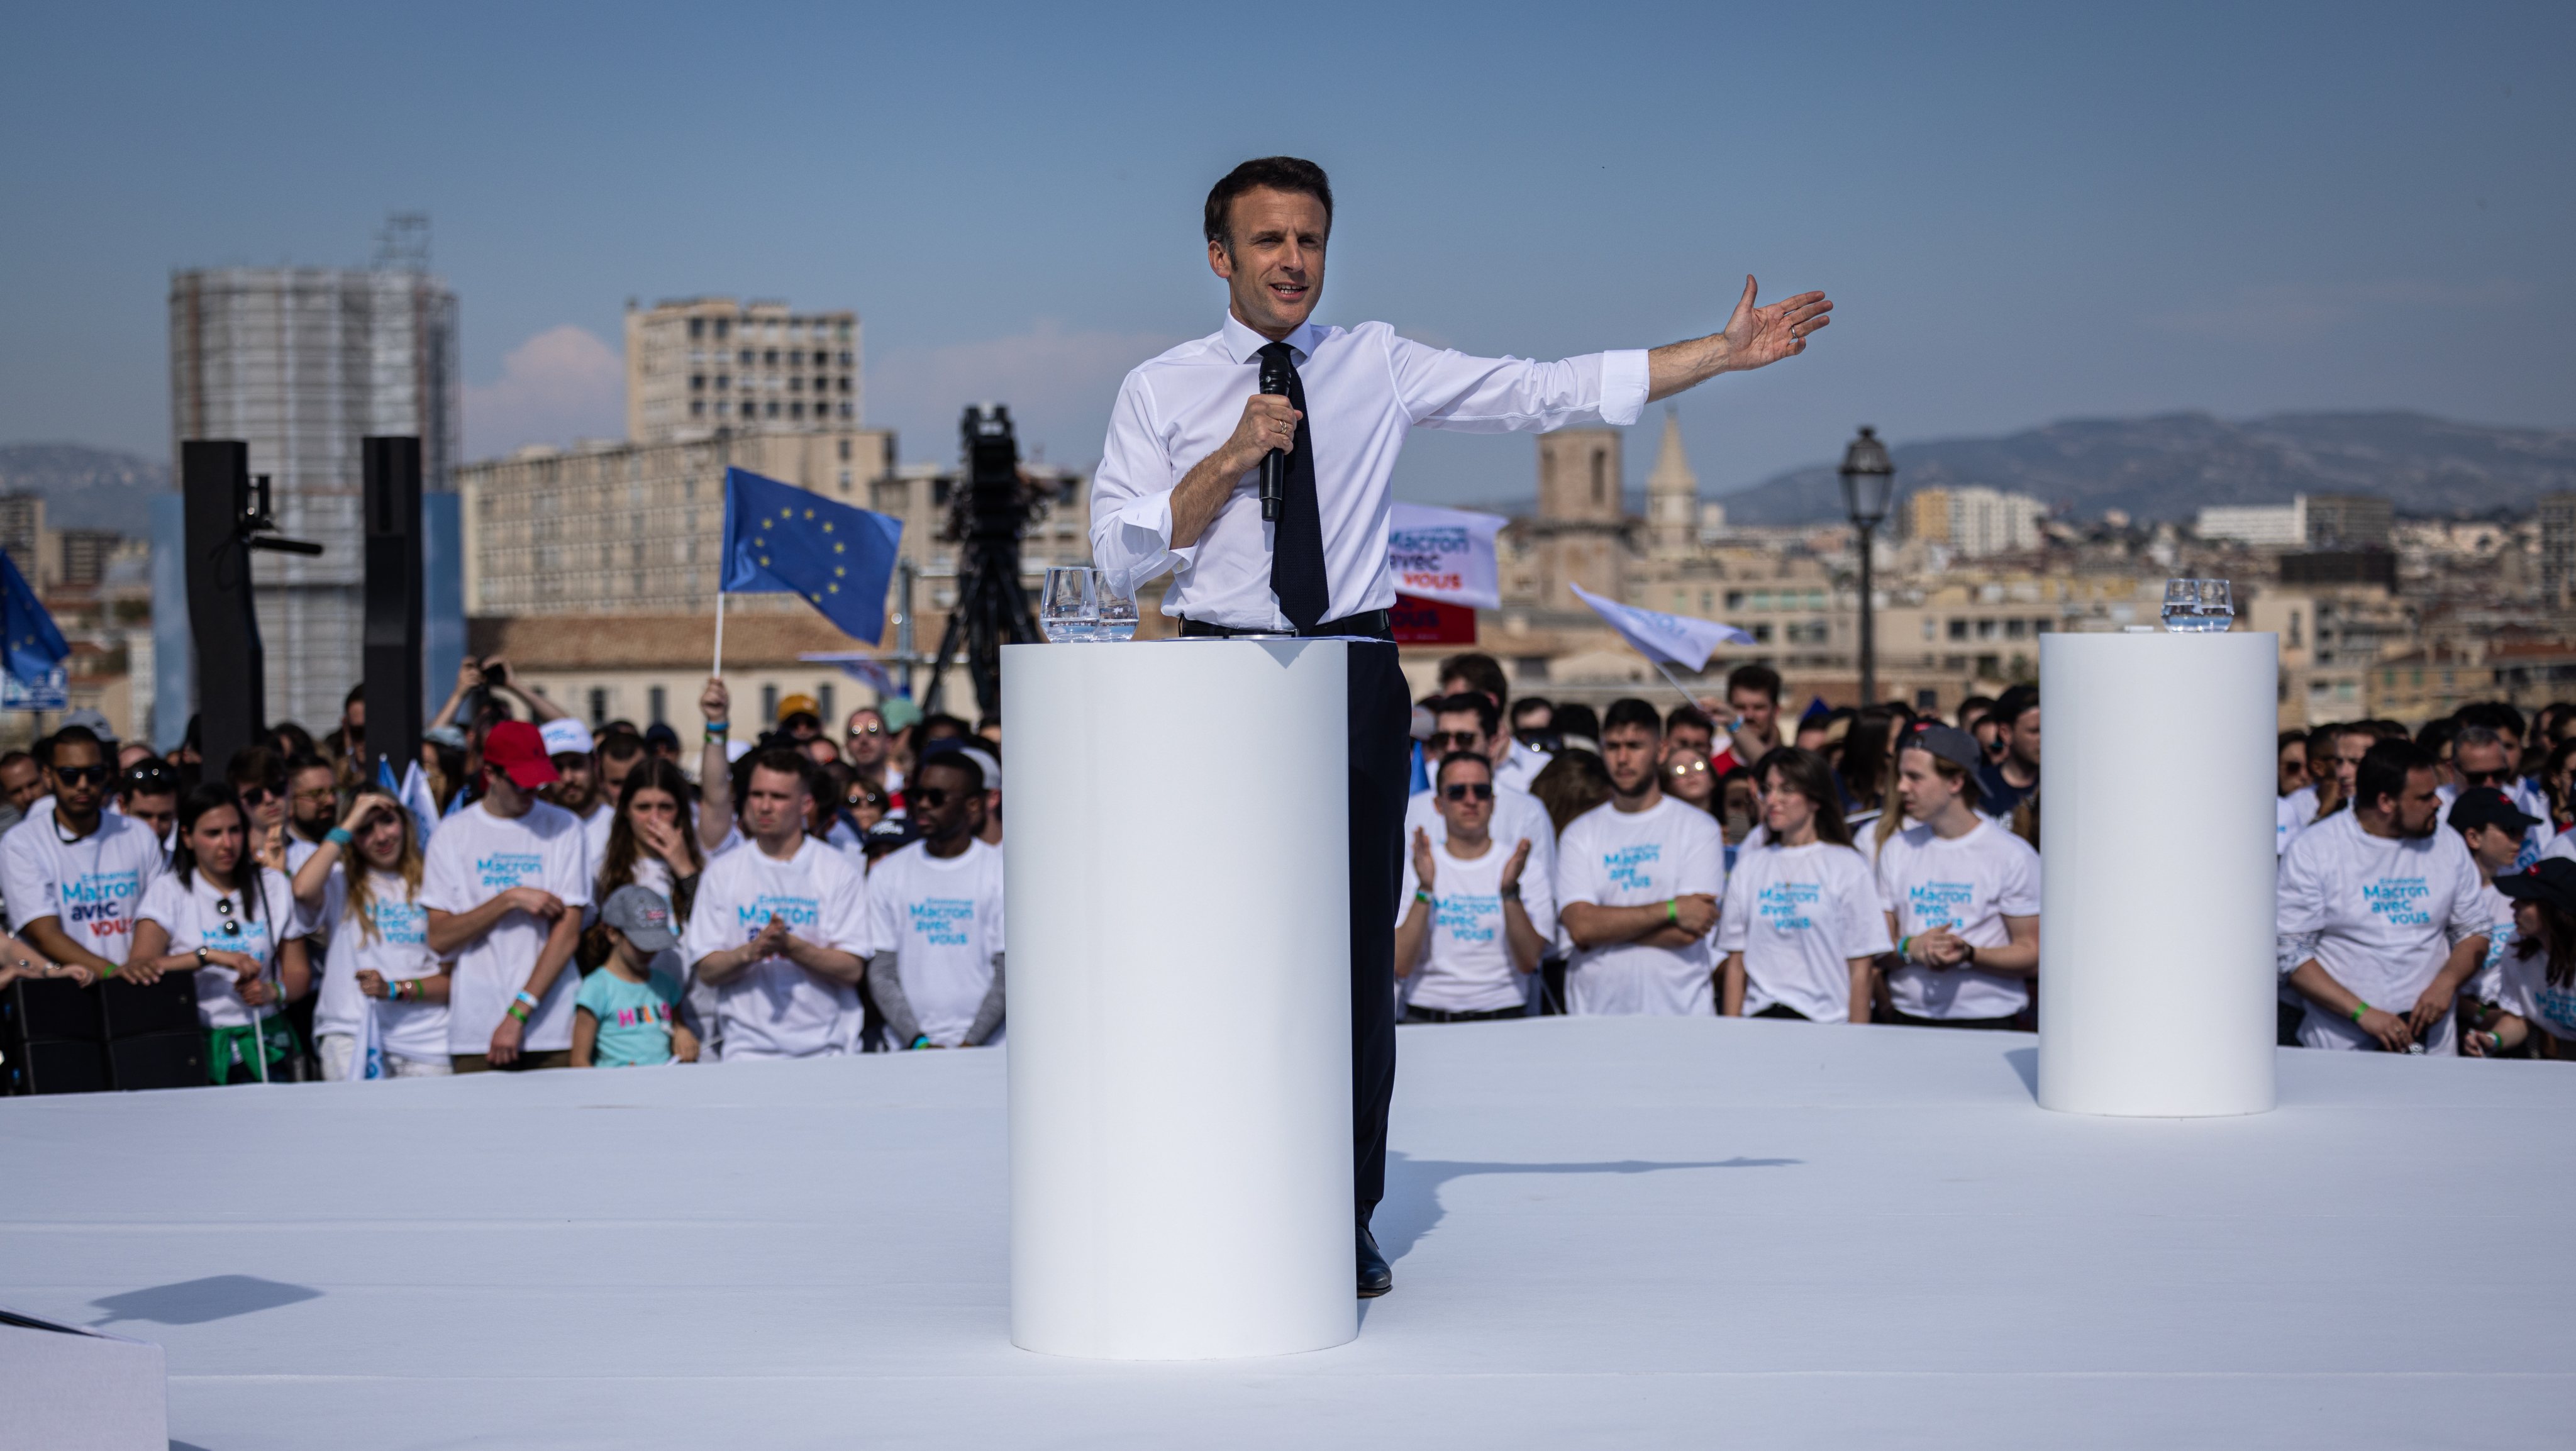 Emmanuel Macron, Candidate For France&#039;s La Republique En Marche Party, Campaigns For President